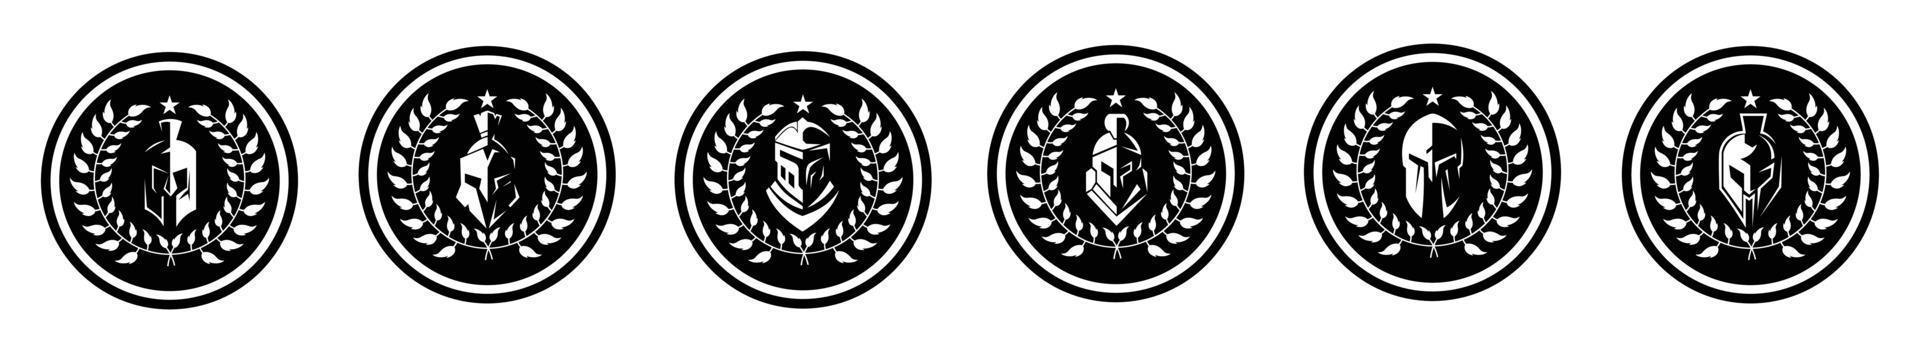 medaljong med sparta spartansk hjälm för grekisk krigare logotyp design vektor